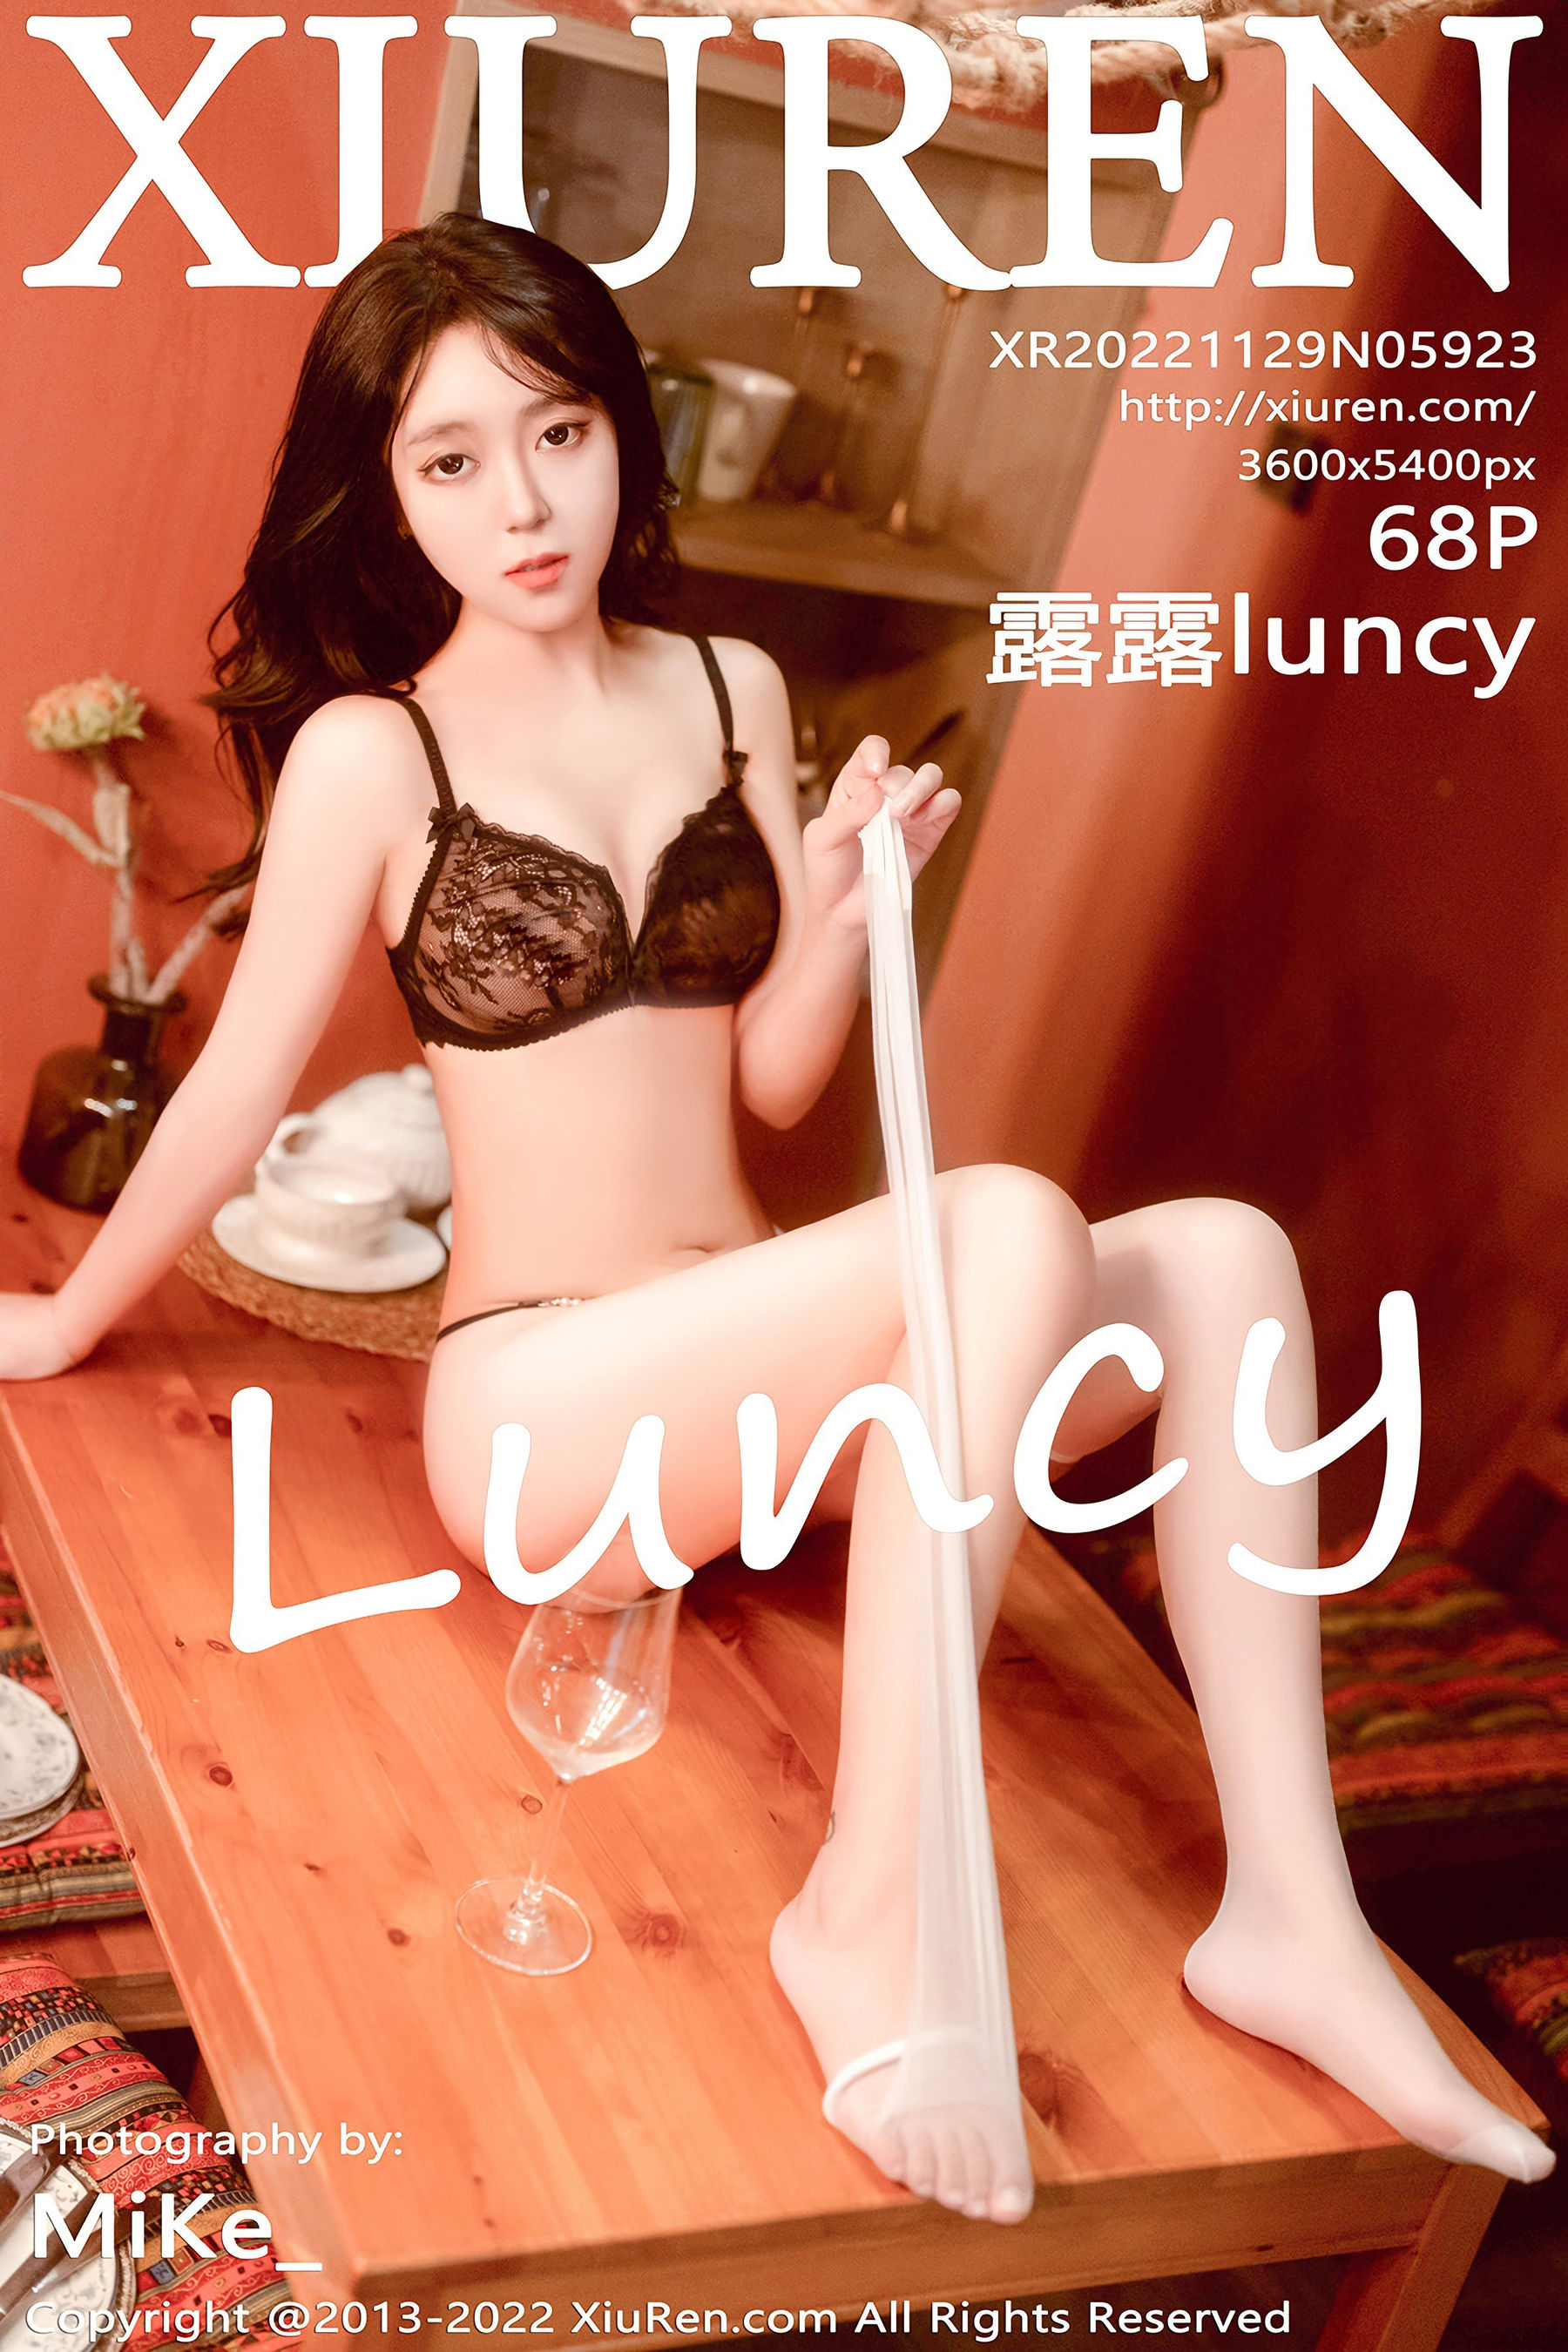 [秀人XiuRen] No.5923 露露luncy1